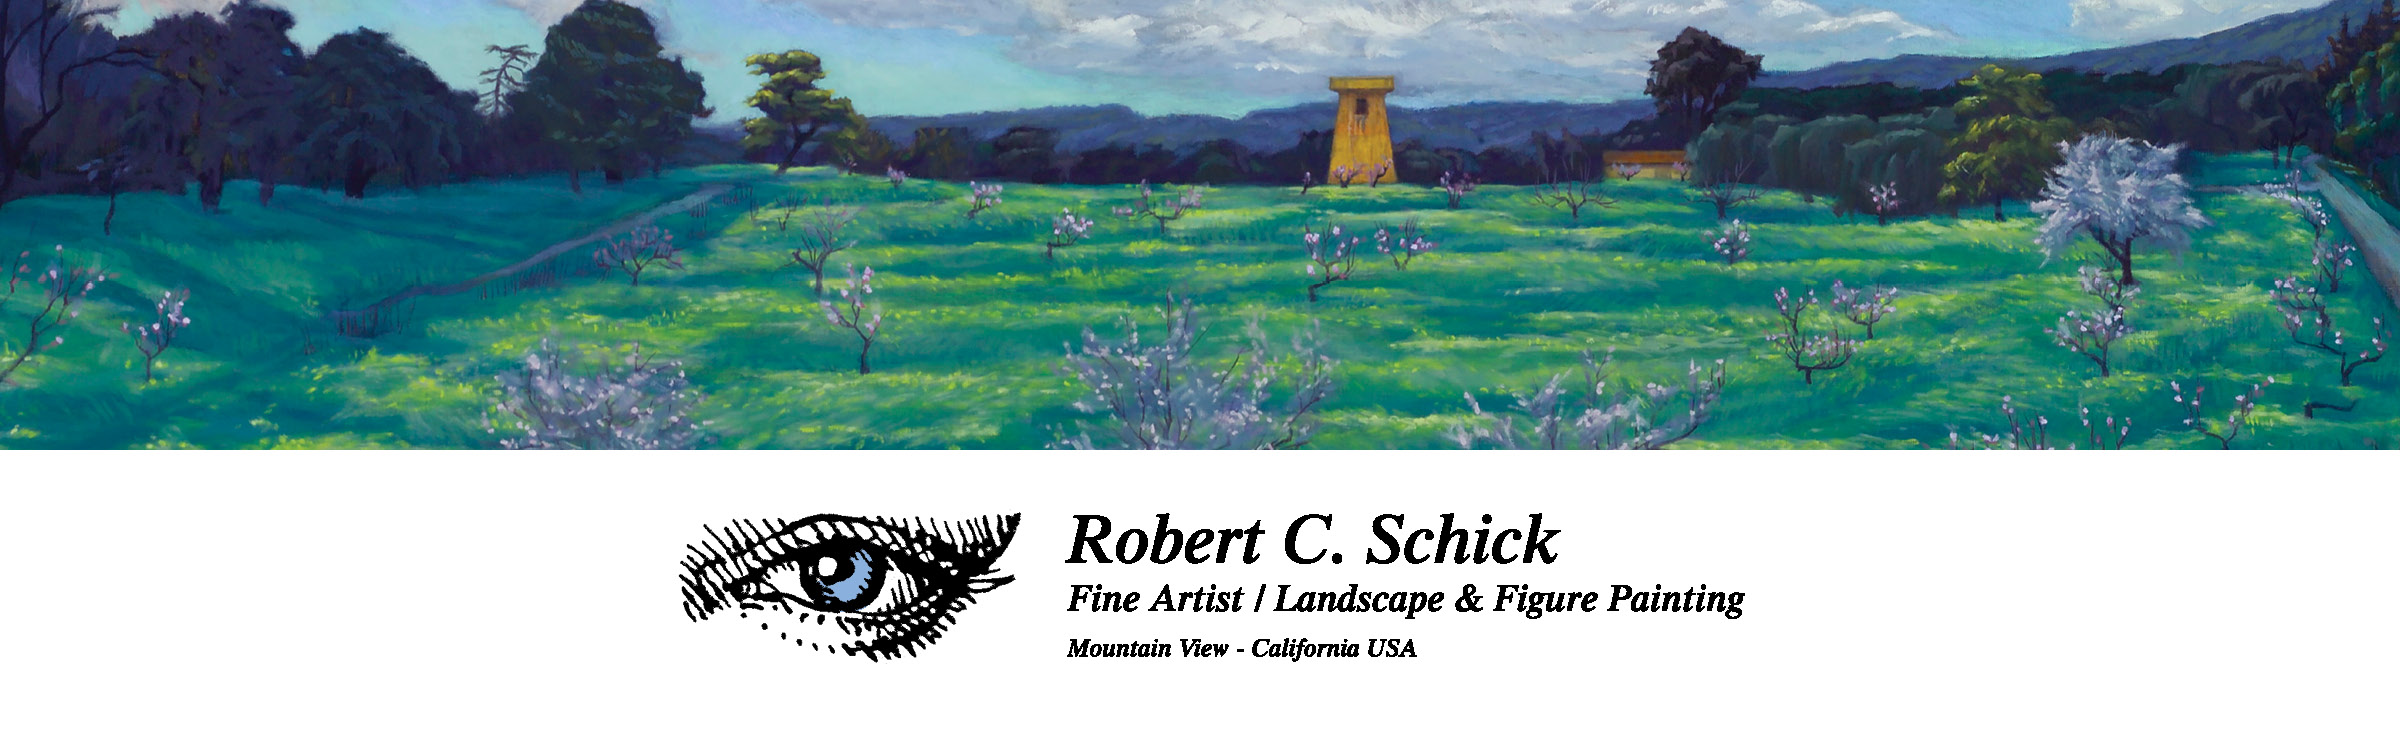 Robert Schick Artist Robert C. Schick Artist Bay Area Mountain View CA